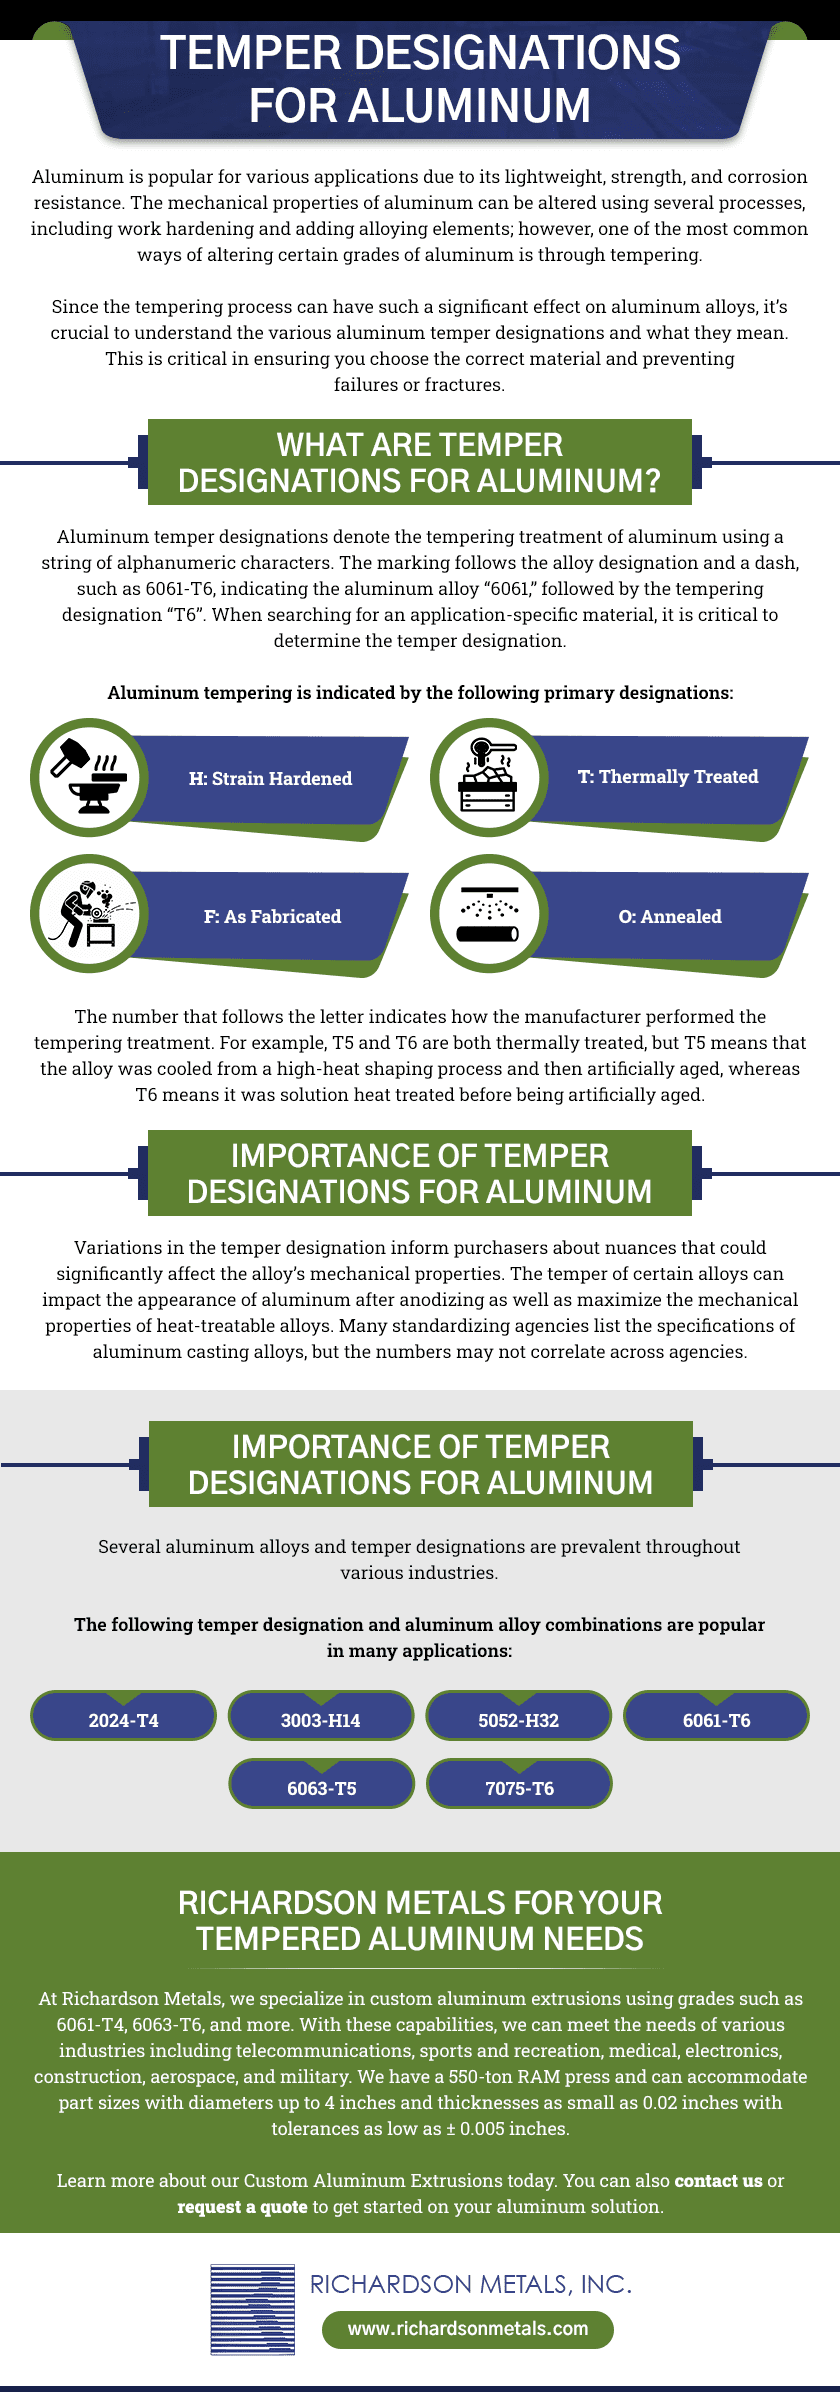 TEMPER DESIGNATIONS FOR ALUMINUM